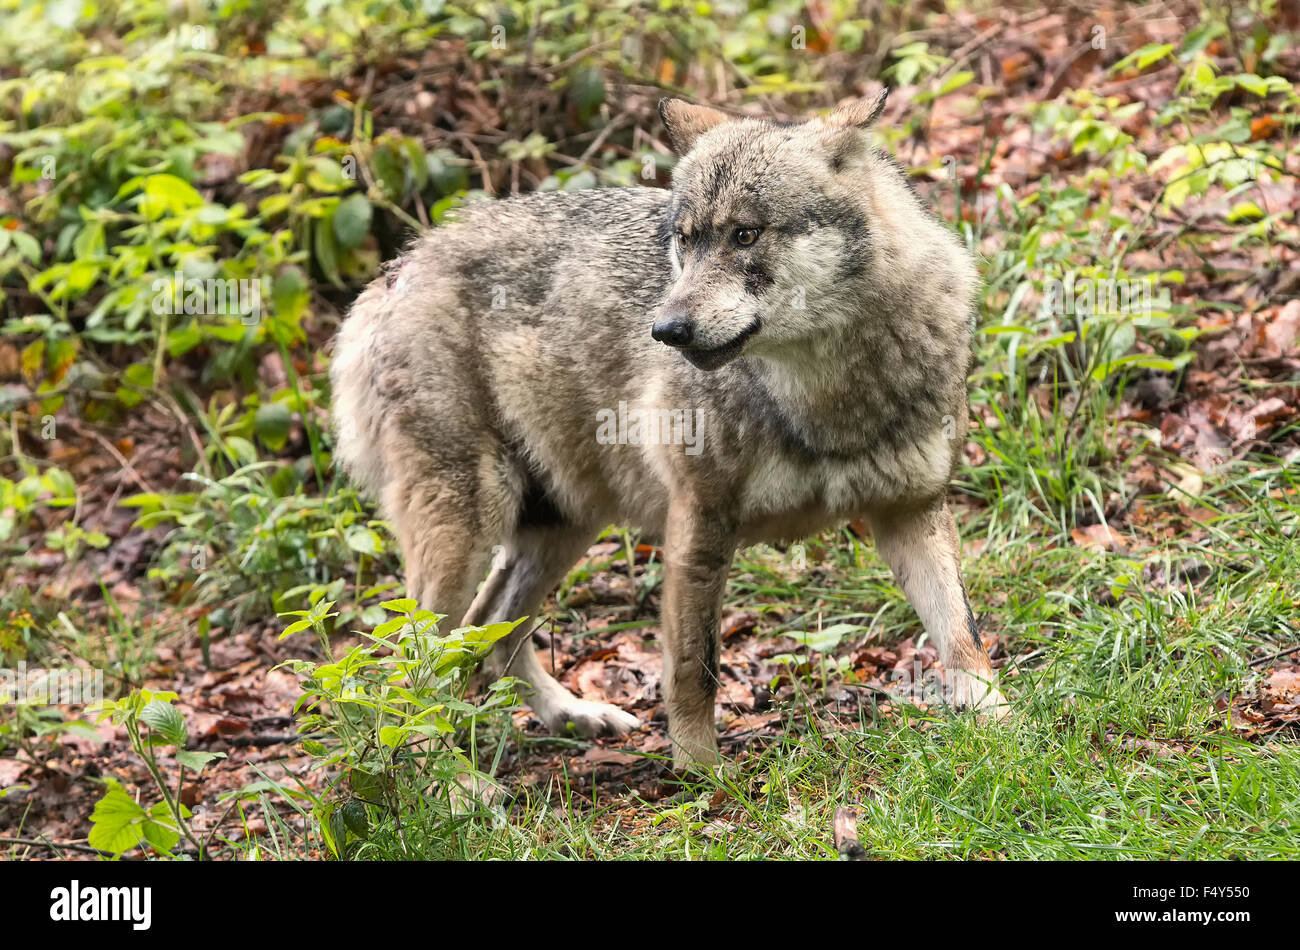 European wolf, Europaeischer Wolf, Canis lupus, wolf, CZECH REPUBLIC. Stock Photo